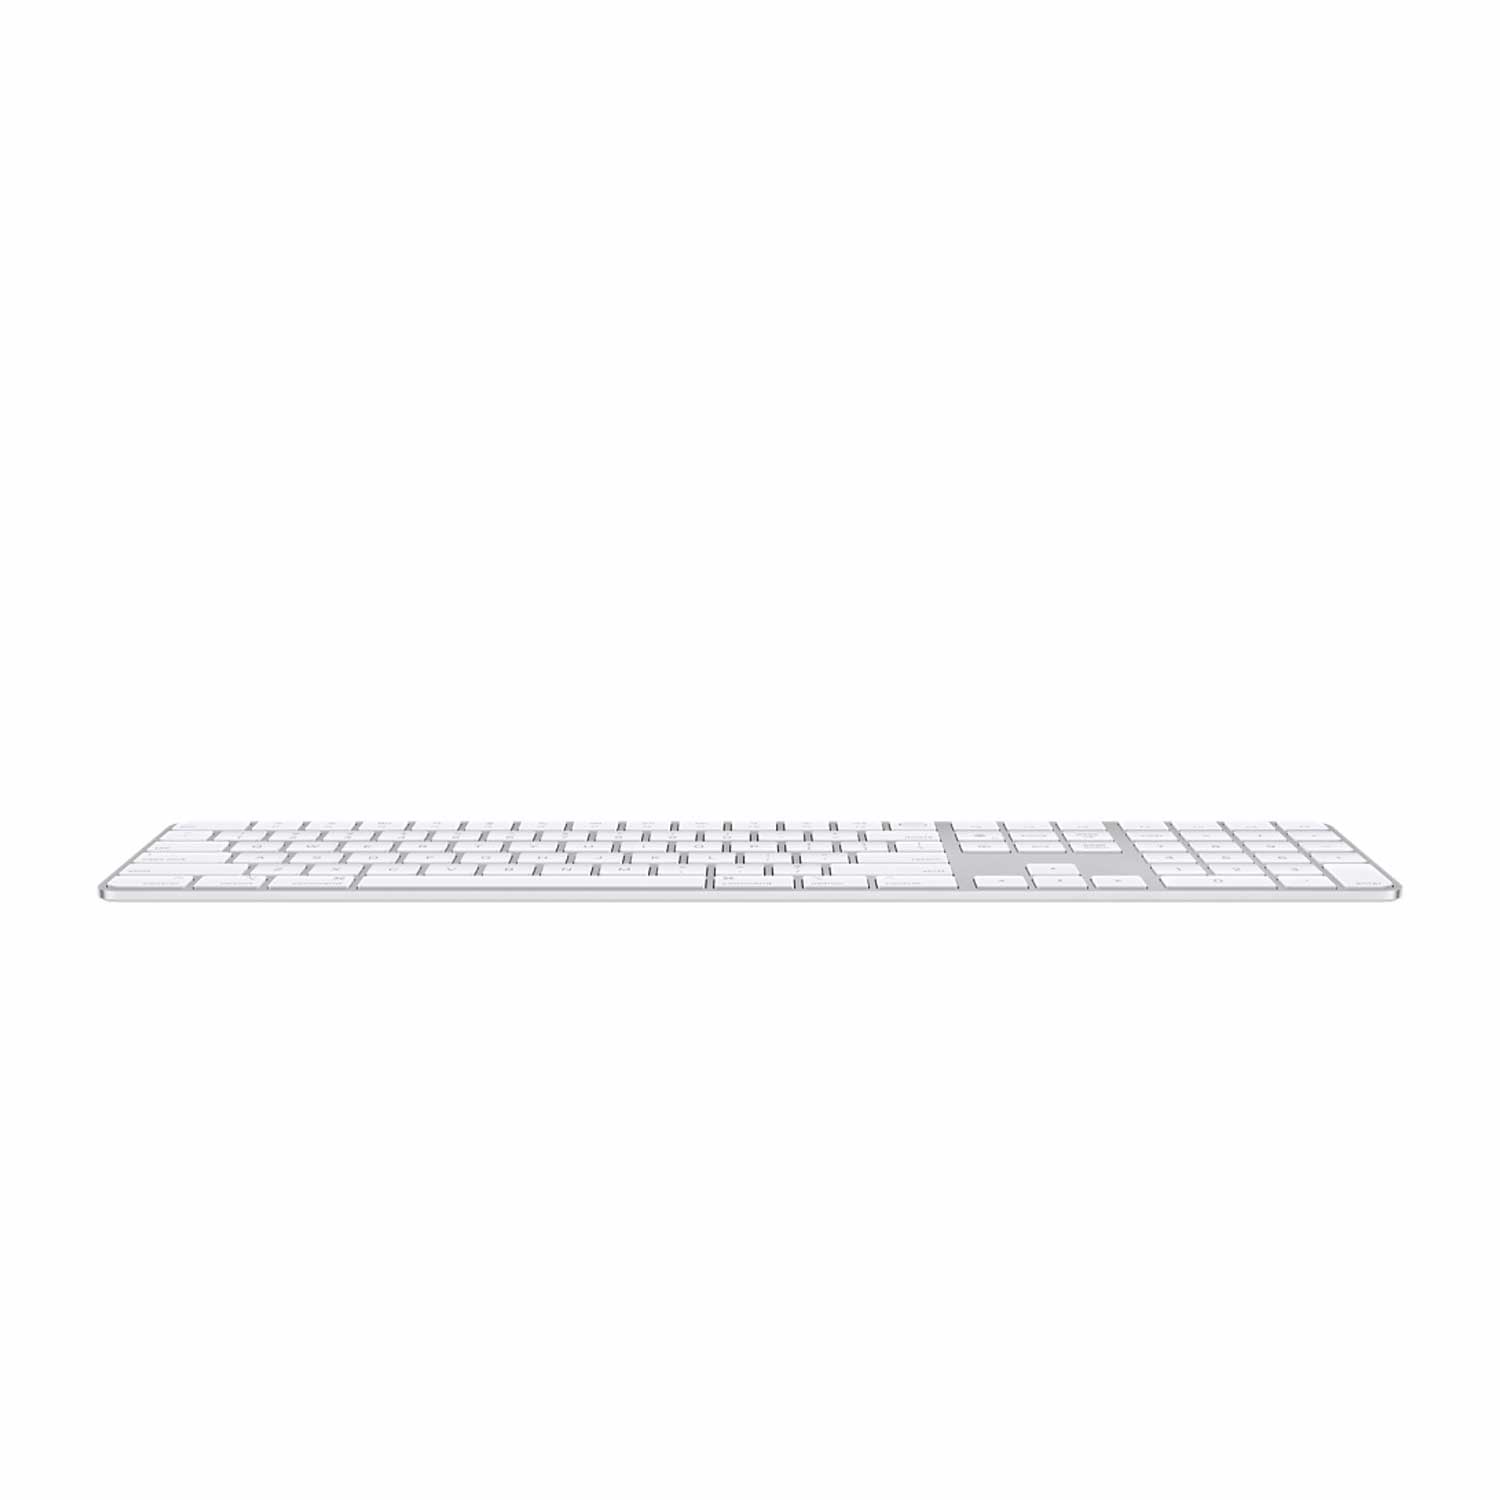 Magic Keyboard mit Touch ID und Ziffernblock für Mac Modelle mit Apple Chip – Deutsch